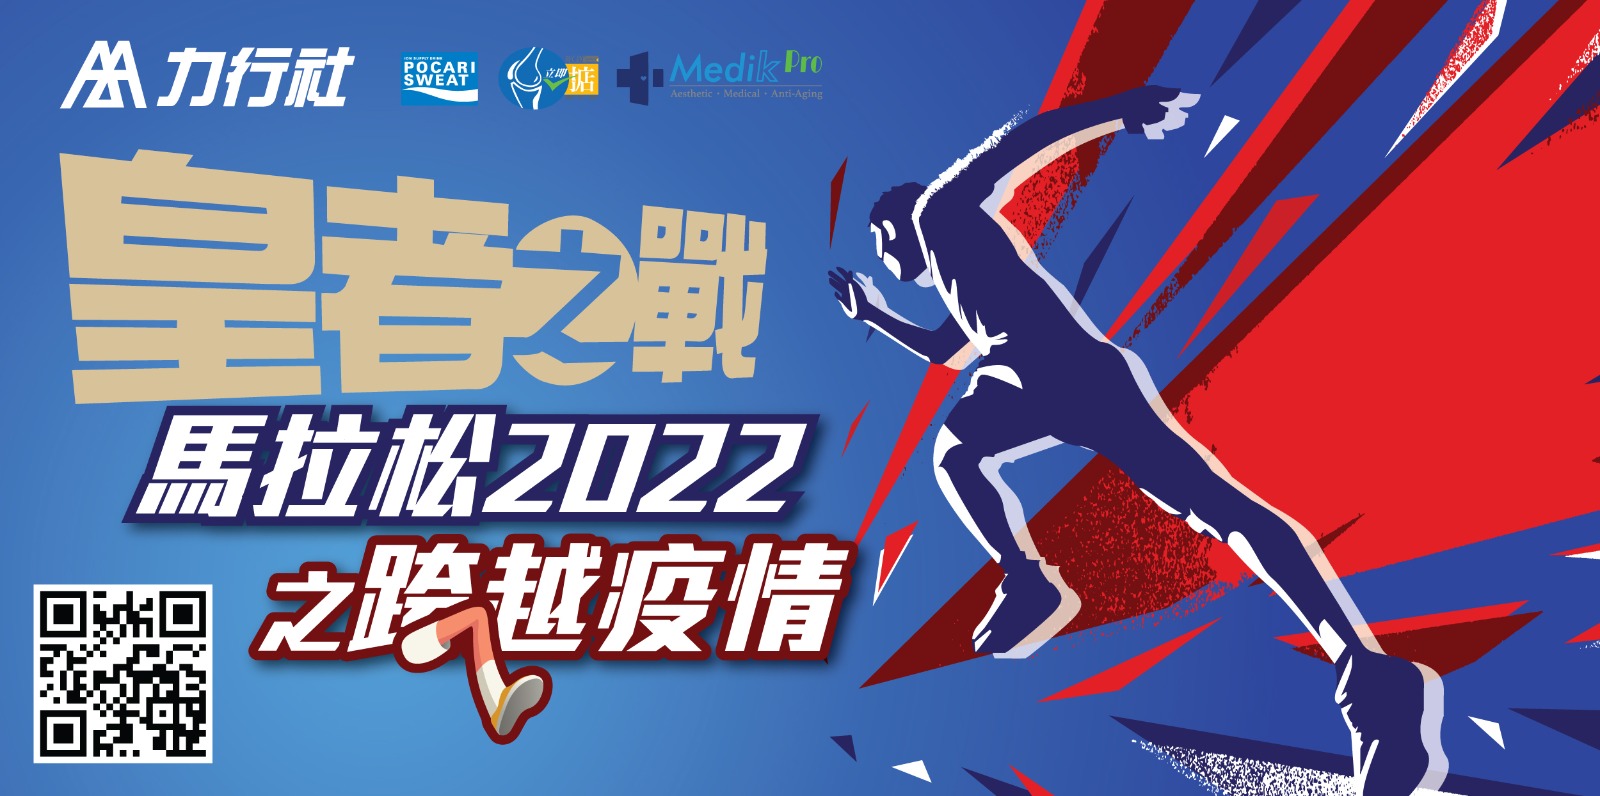 皇者之戰馬拉松2022  WinWin Run 2022